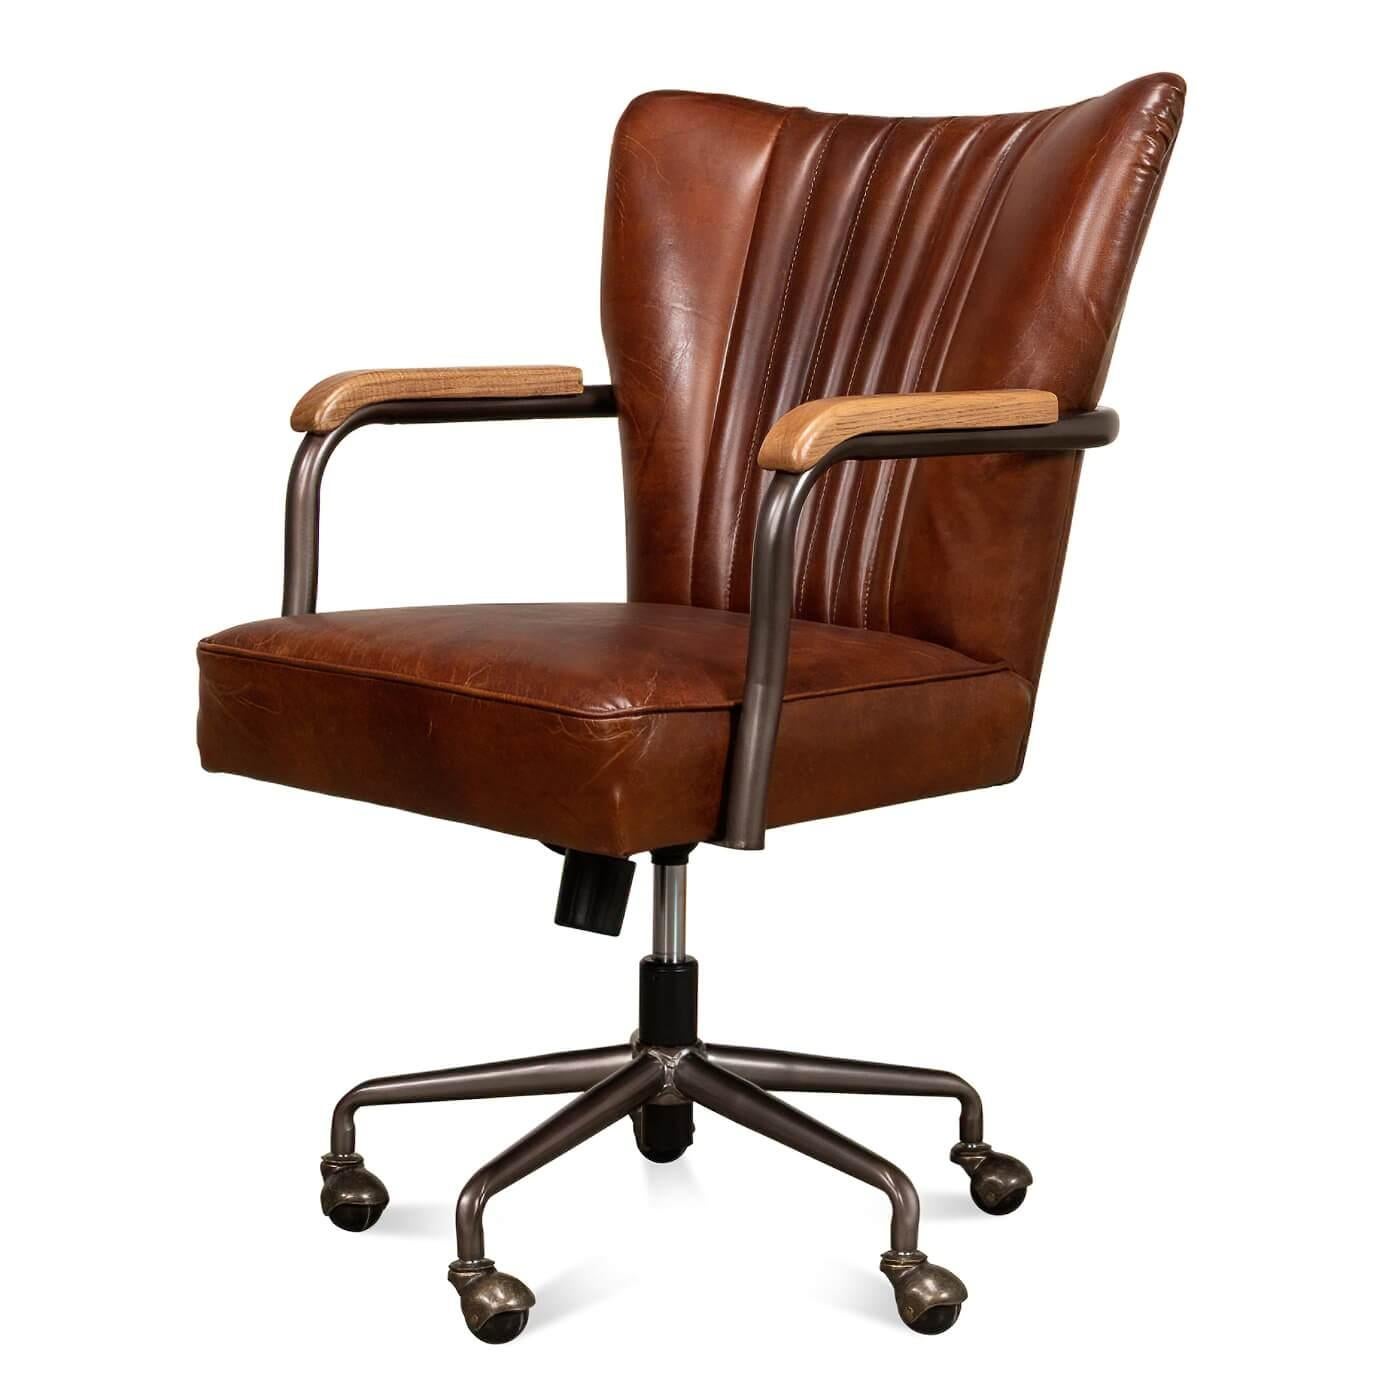 Ein Leder-Schreibtischstuhl im Industriestil mit einem drehbaren Fuß mit 5 Kugelrollen. Dieser Stuhl ist mit unserem braunen Havanna-Leder gepolstert und verfügt über eine getuftete Rückenlehne mit offenen Metallarmen, die mit Holz verziert sind.